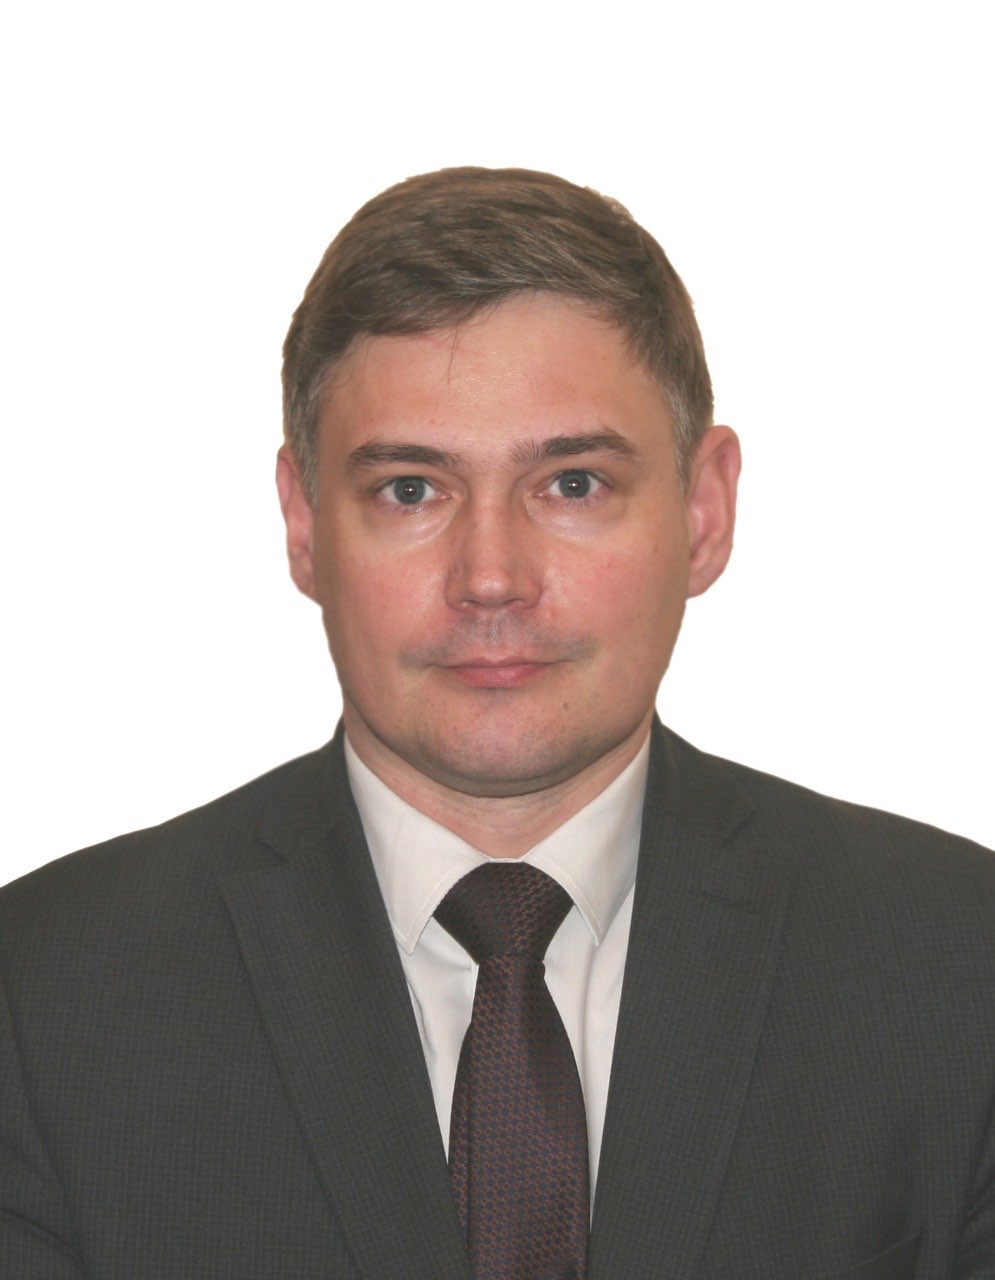 Дмитрий Груничев возглавил министерство строительства Нижегородской области  - фото 1